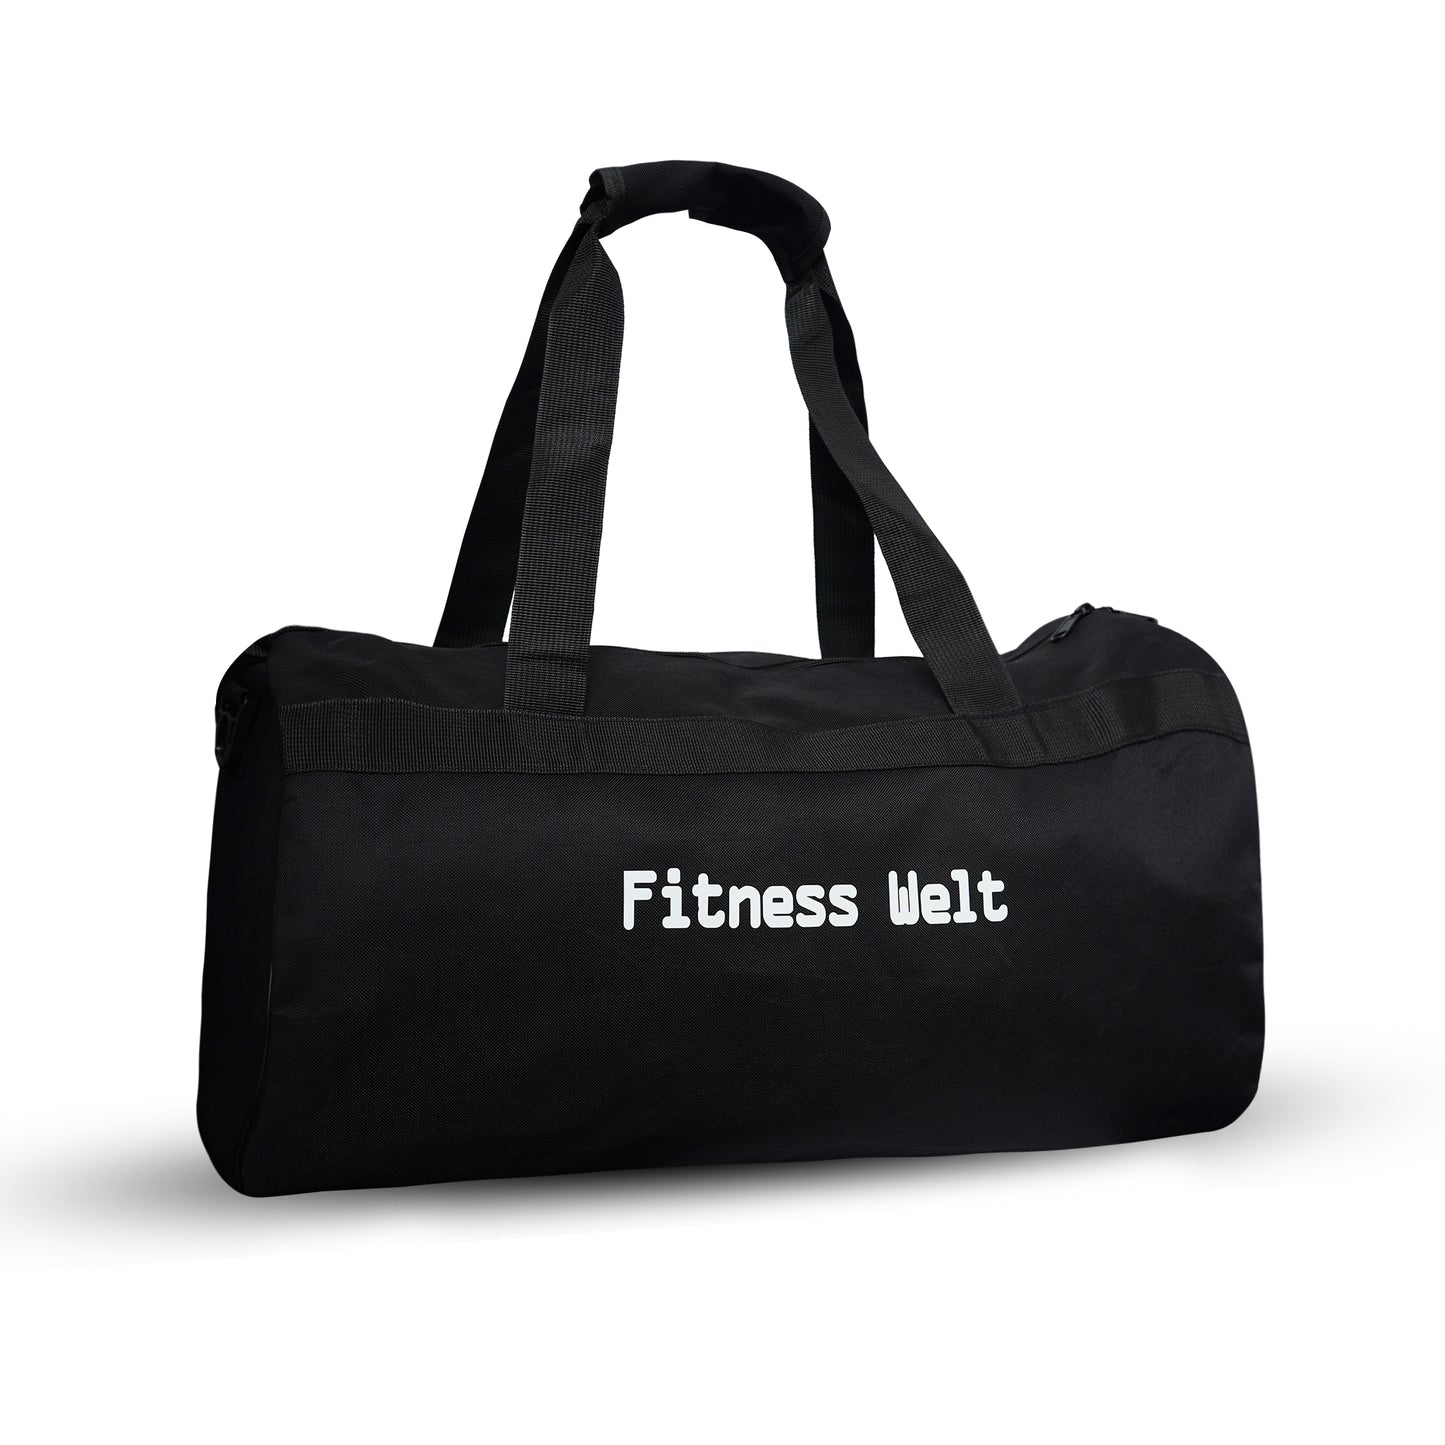 Fitness Welt Duffle Bag